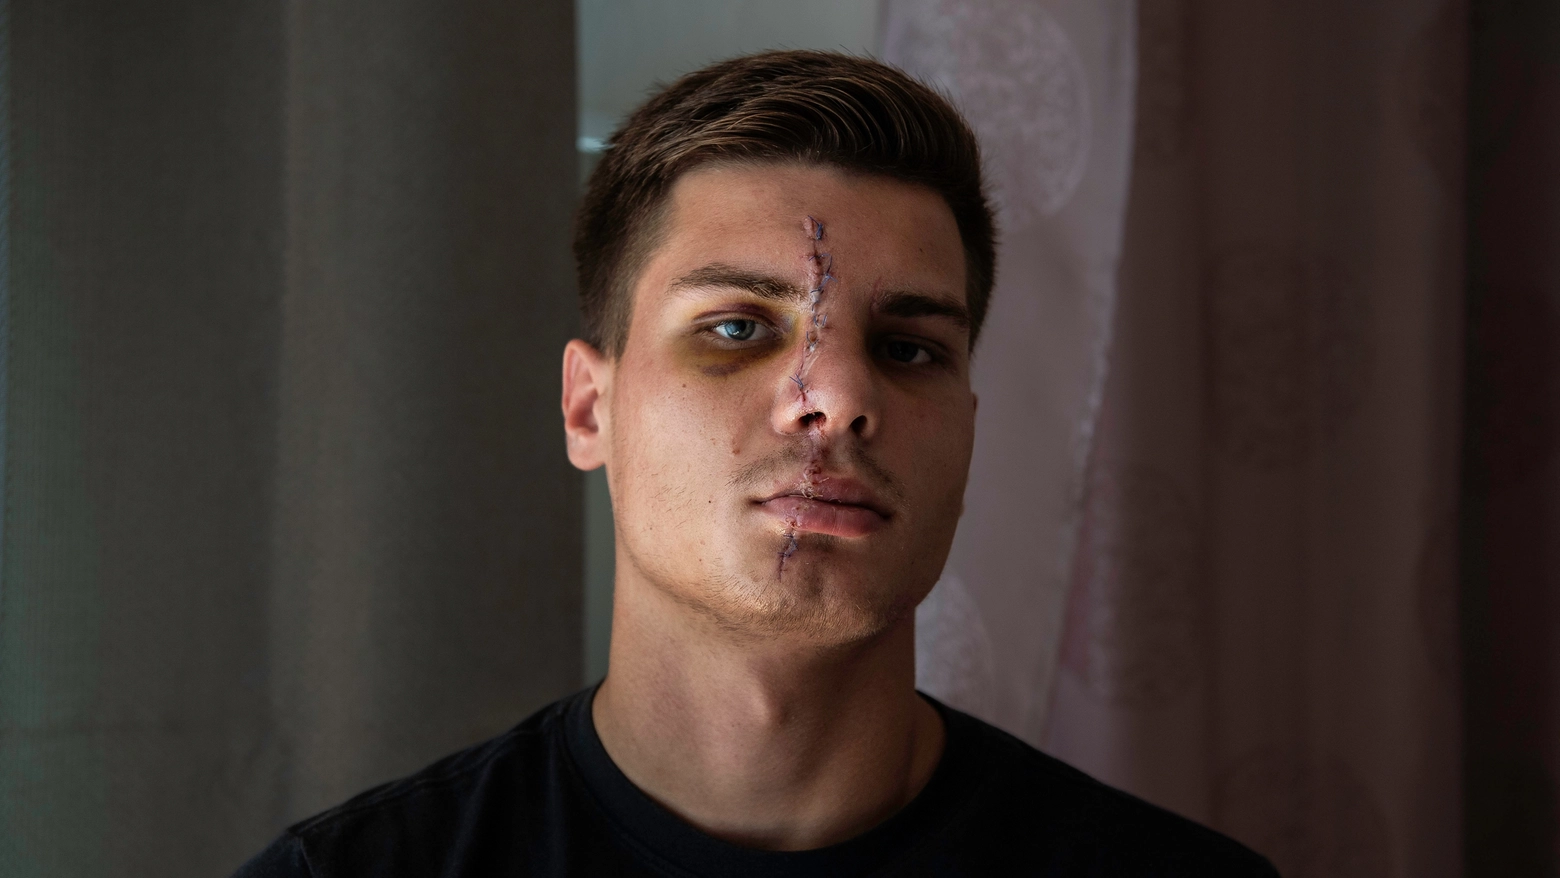 Le ferite sul volto di Danylo Shydlovskyi